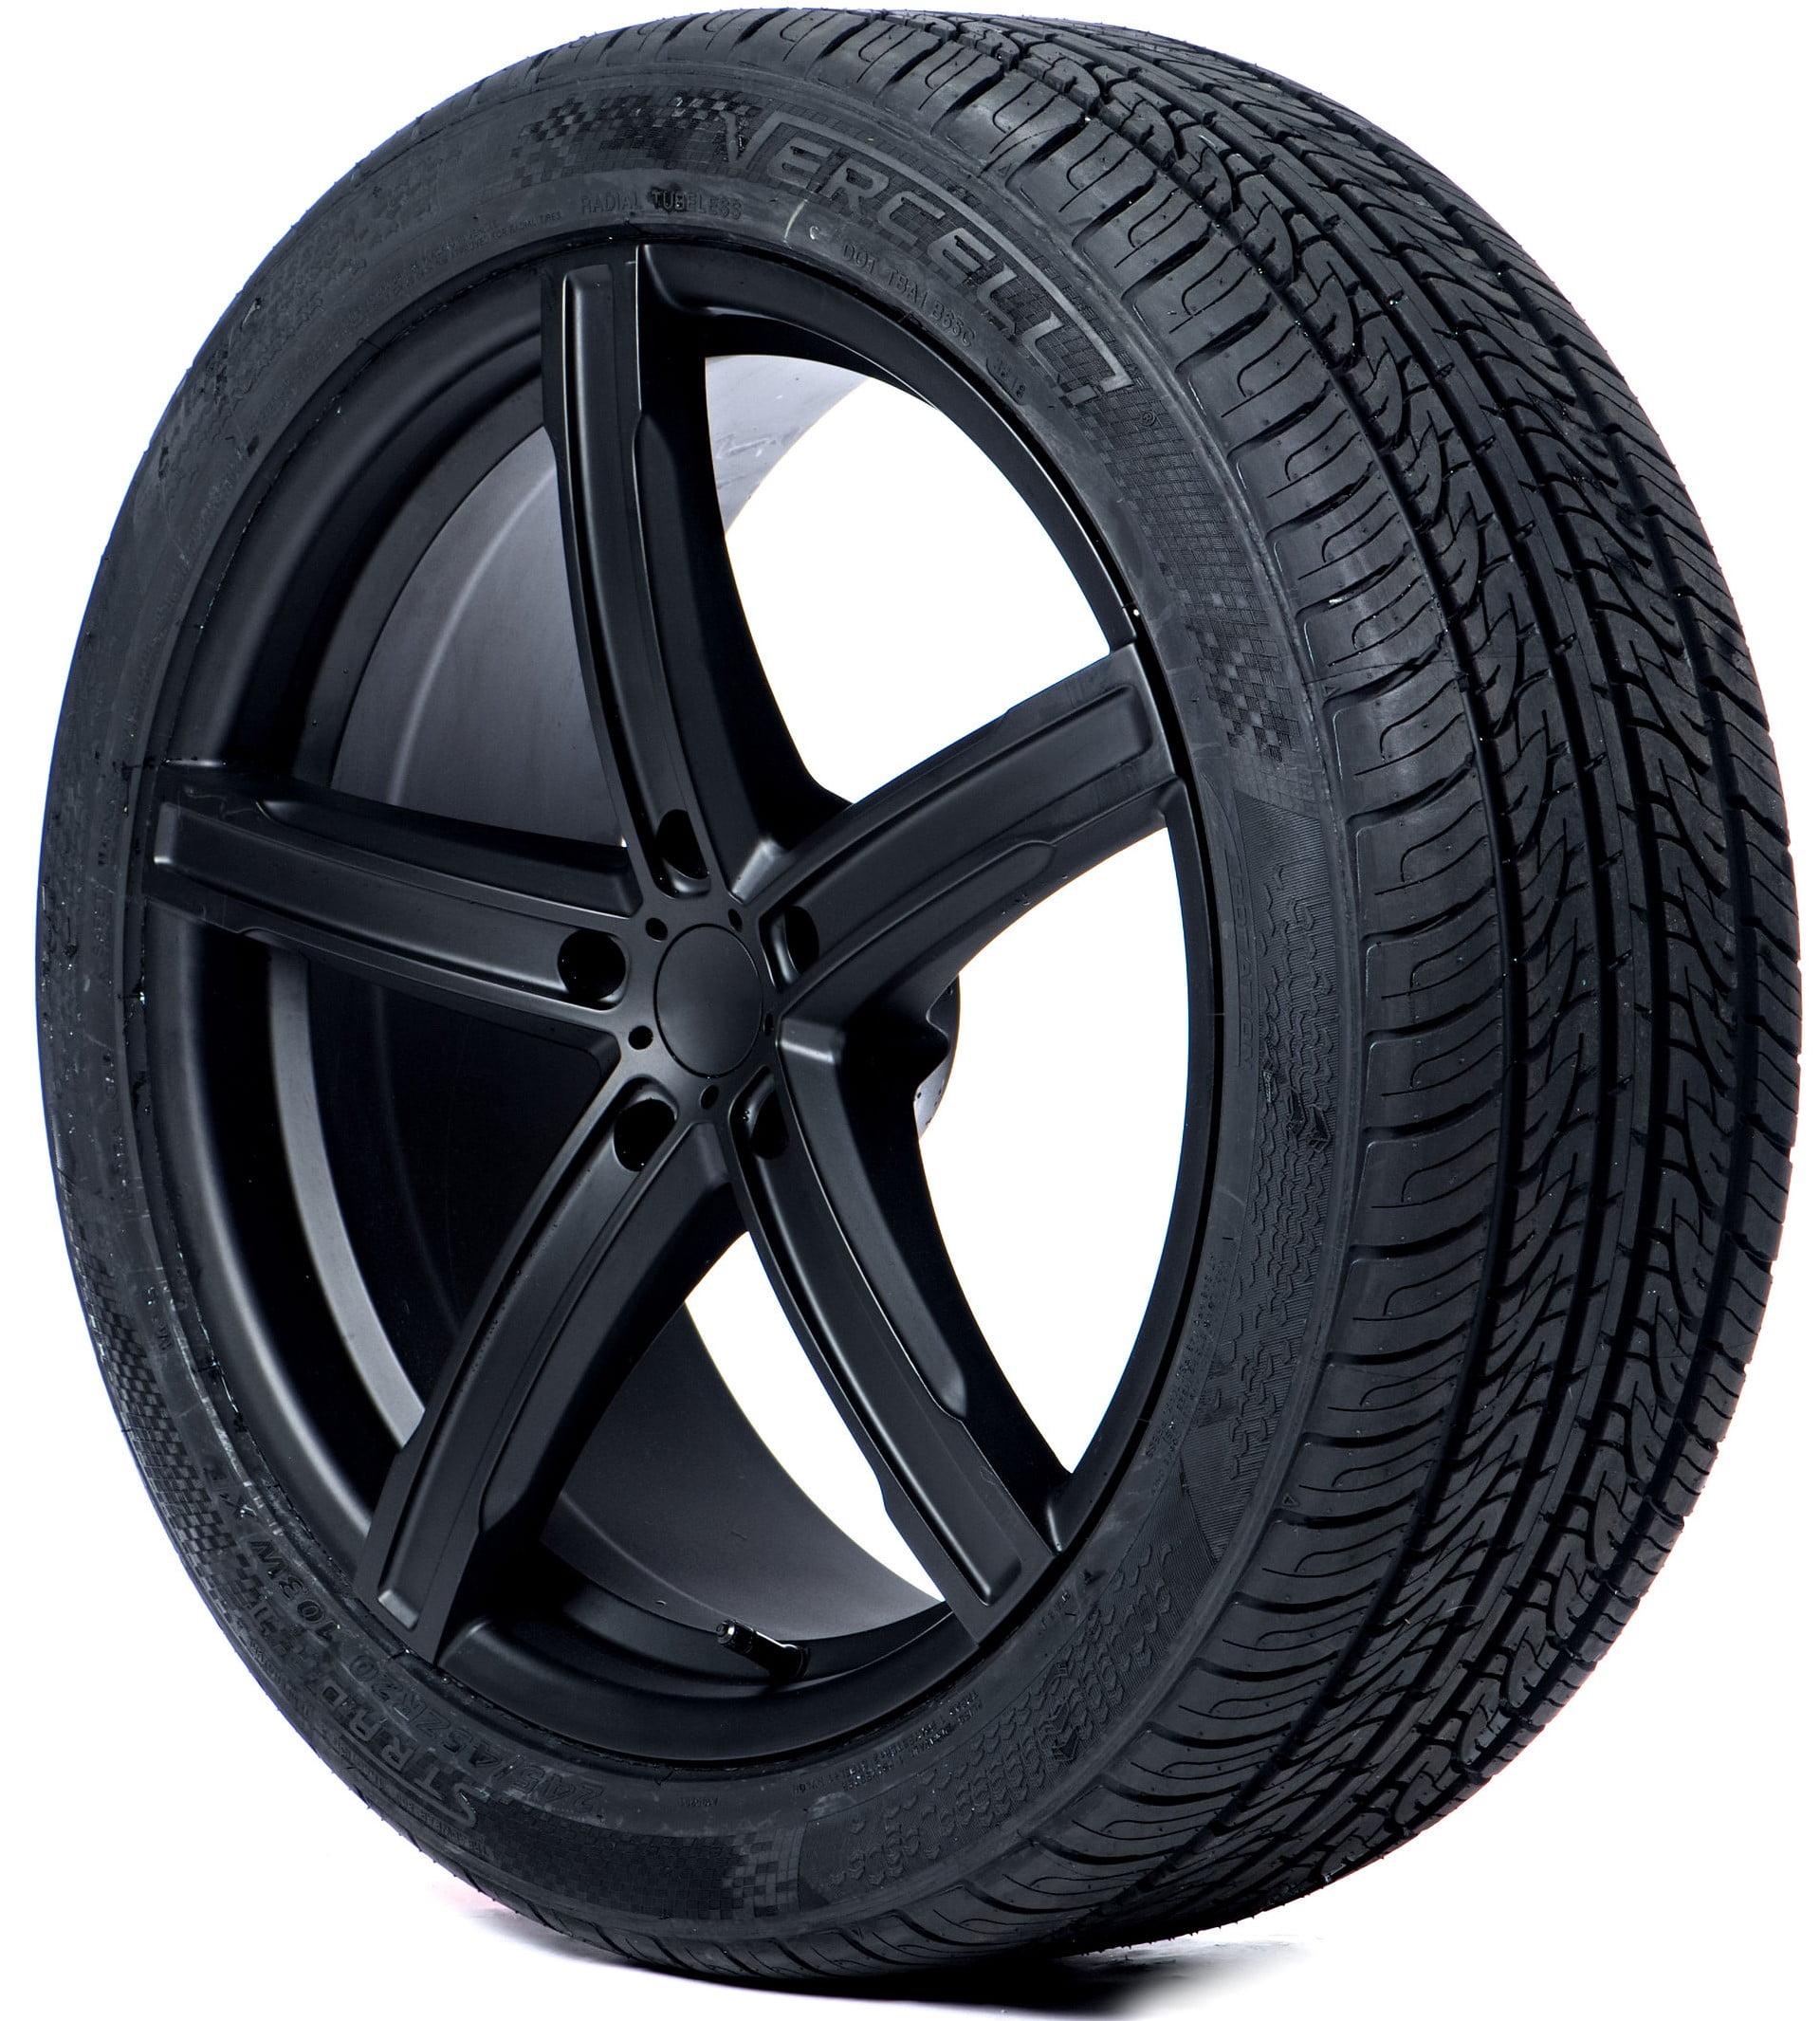 Buy Vercelli Terreno H/T Tires Online